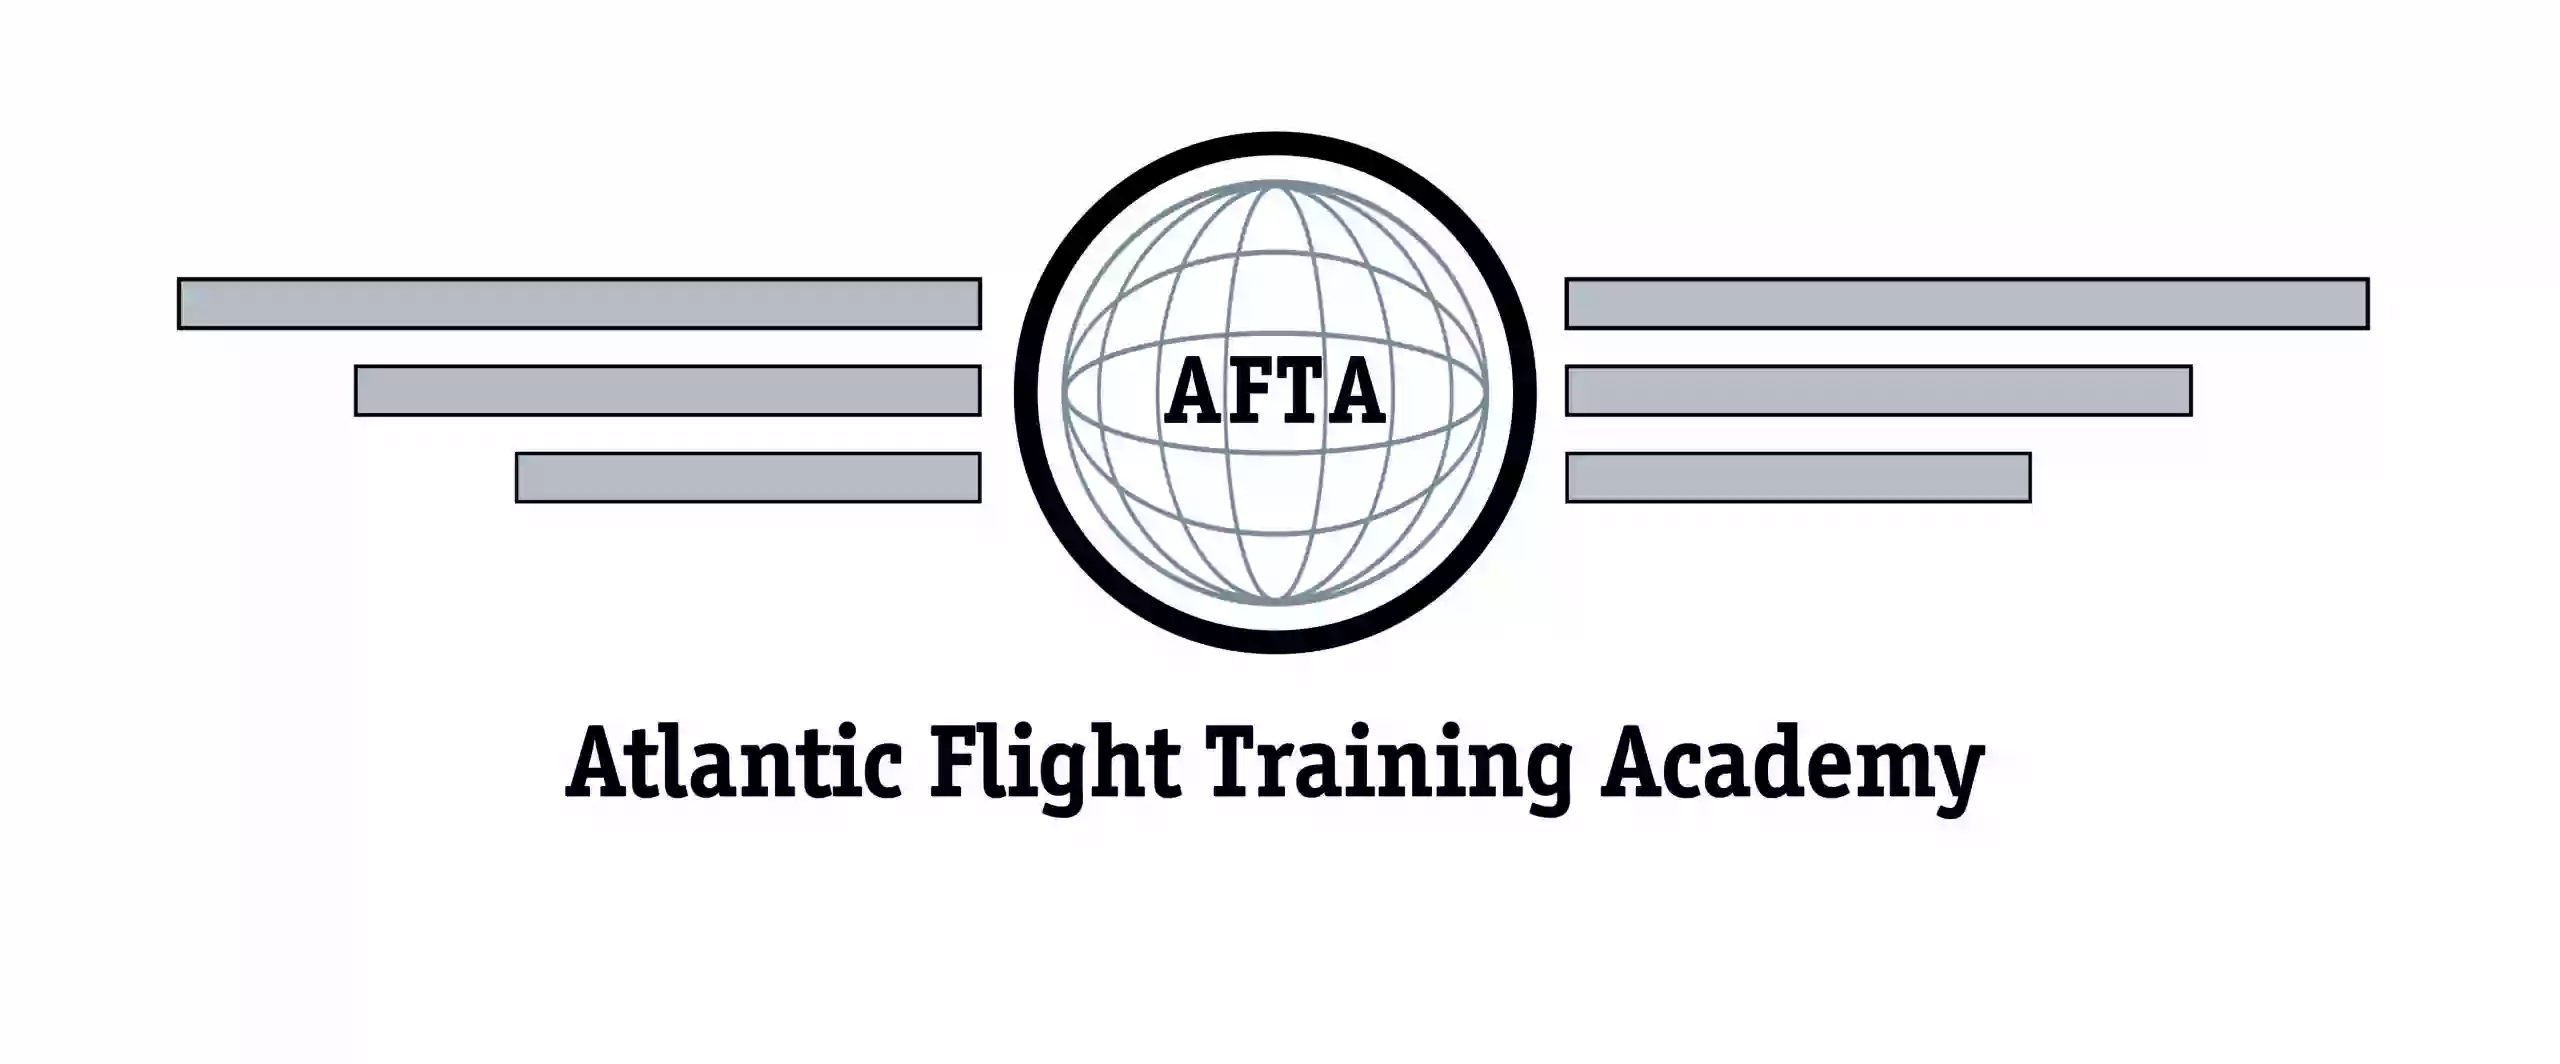 Atlantic Flight Training Academy - Flight Simulator Centre